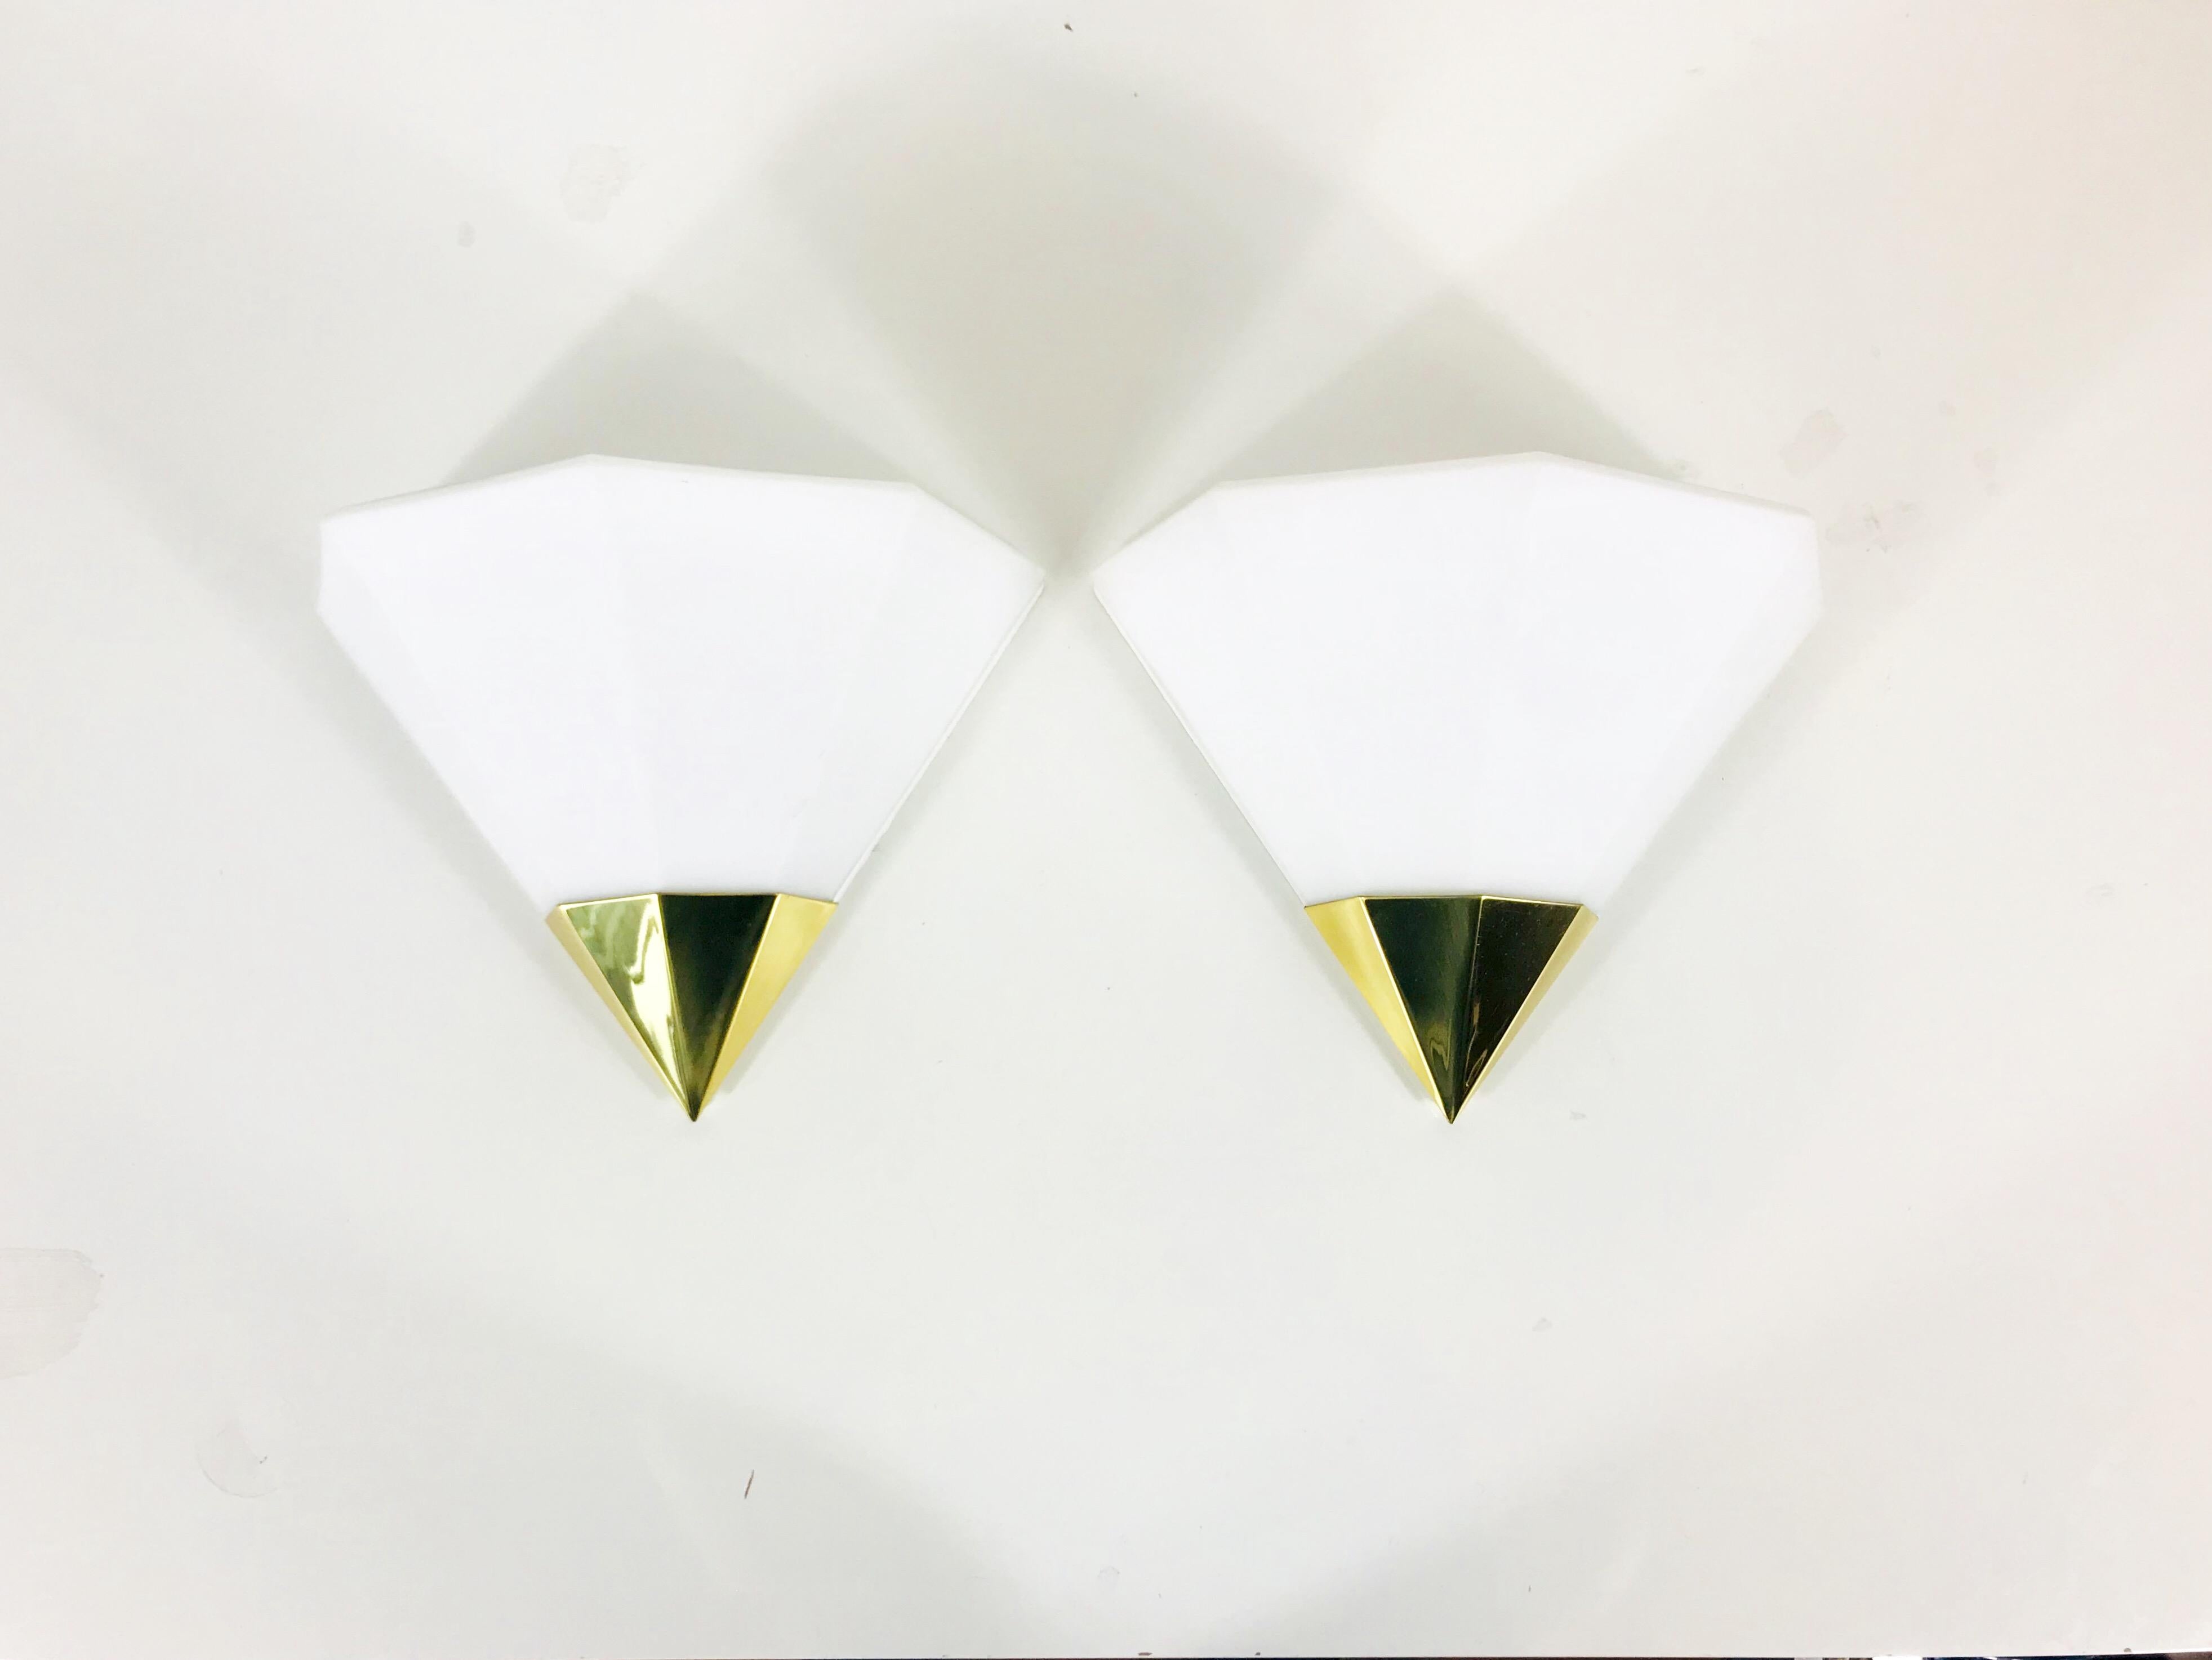 Ein schönes Paar Mid-Century Modern Wandlampen von Glashütte Limburg, hergestellt in Deutschland in den 1970er Jahren. Sie haben eine schöne Dreiecksform und sind aus Messing und Opalglas gefertigt. Die Rückseite ist aus weißem Metall.

Die